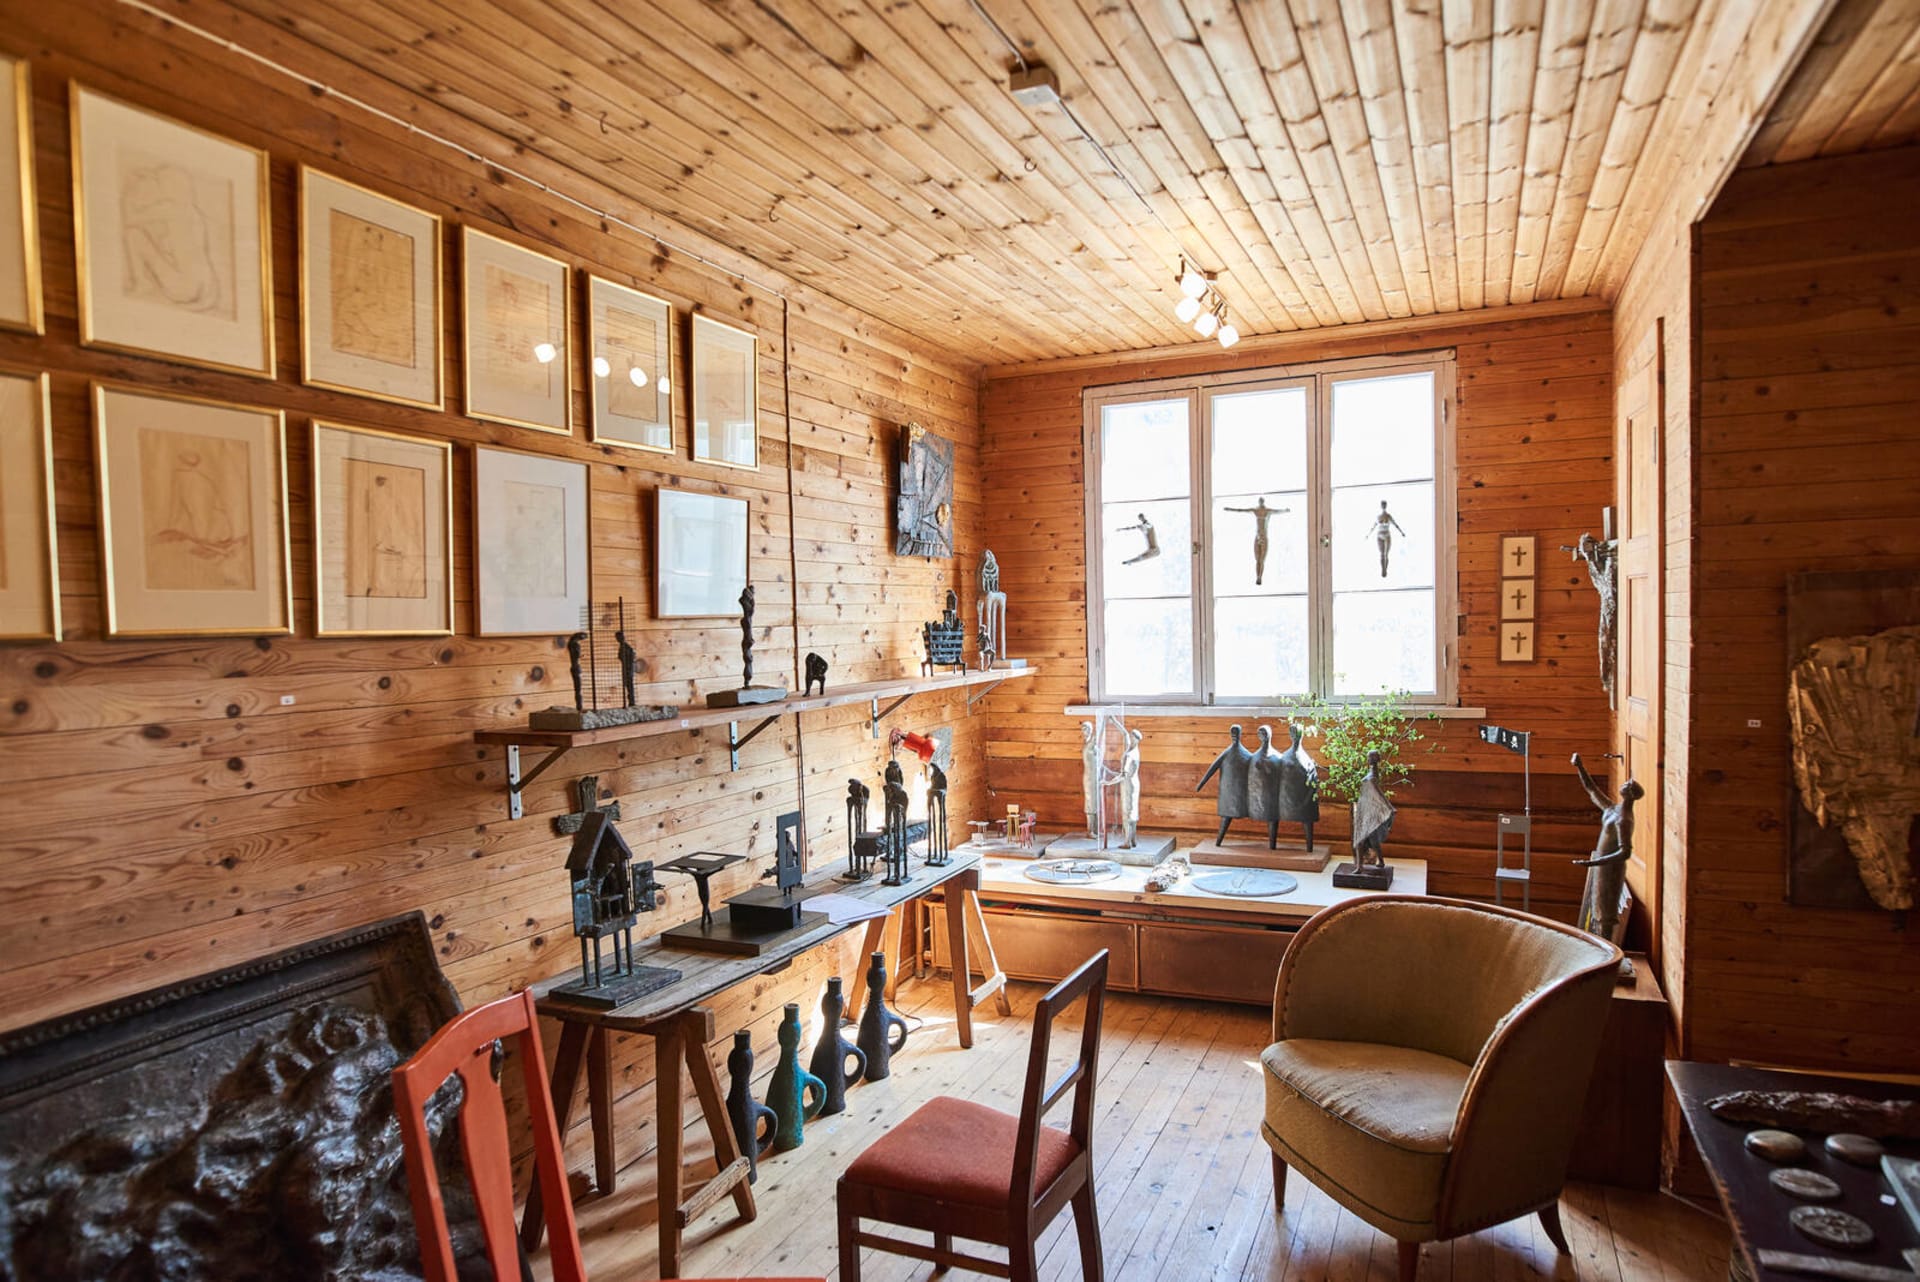 Huone, jossa on seinillä, ikkunoilla ja pöydillä esillä Ossi Somman taideteoksia